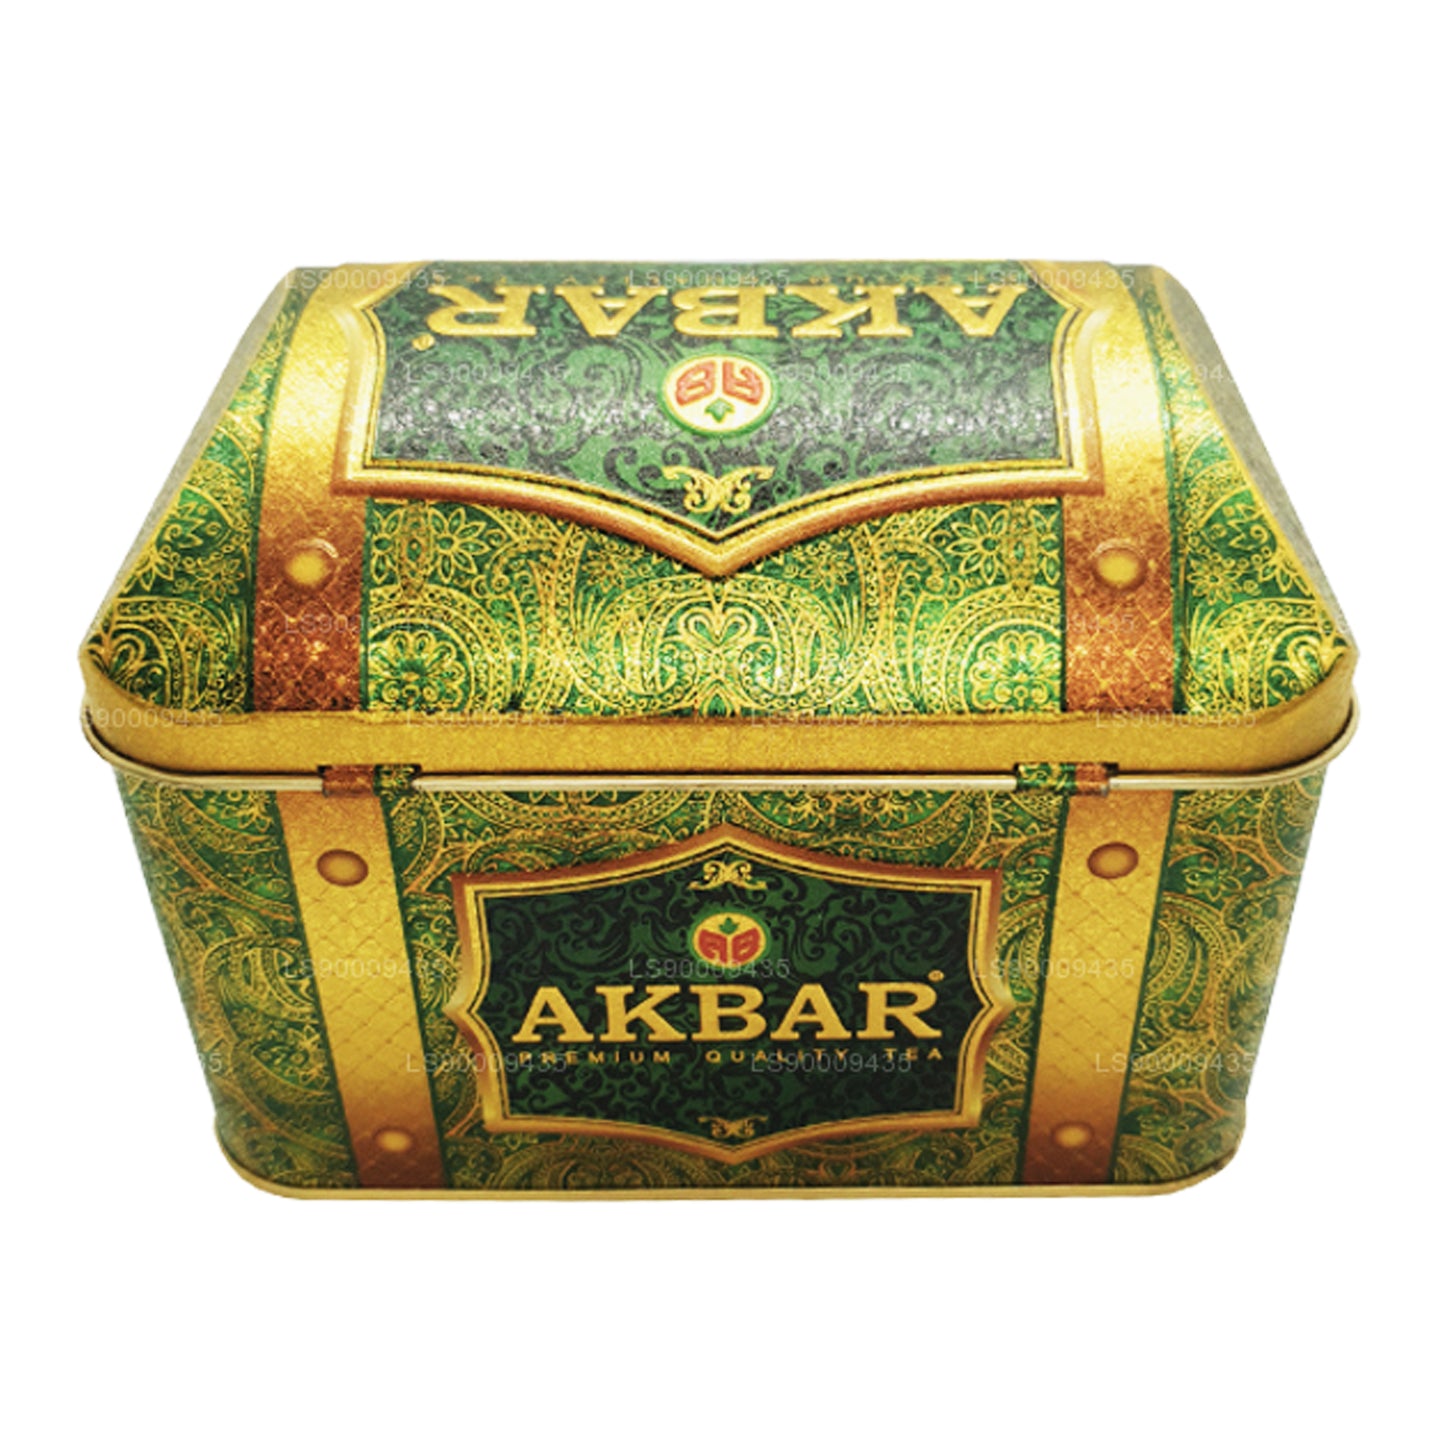 Caja con tesoros de guanábana rica de la colección exclusiva de Akbar (250 g)